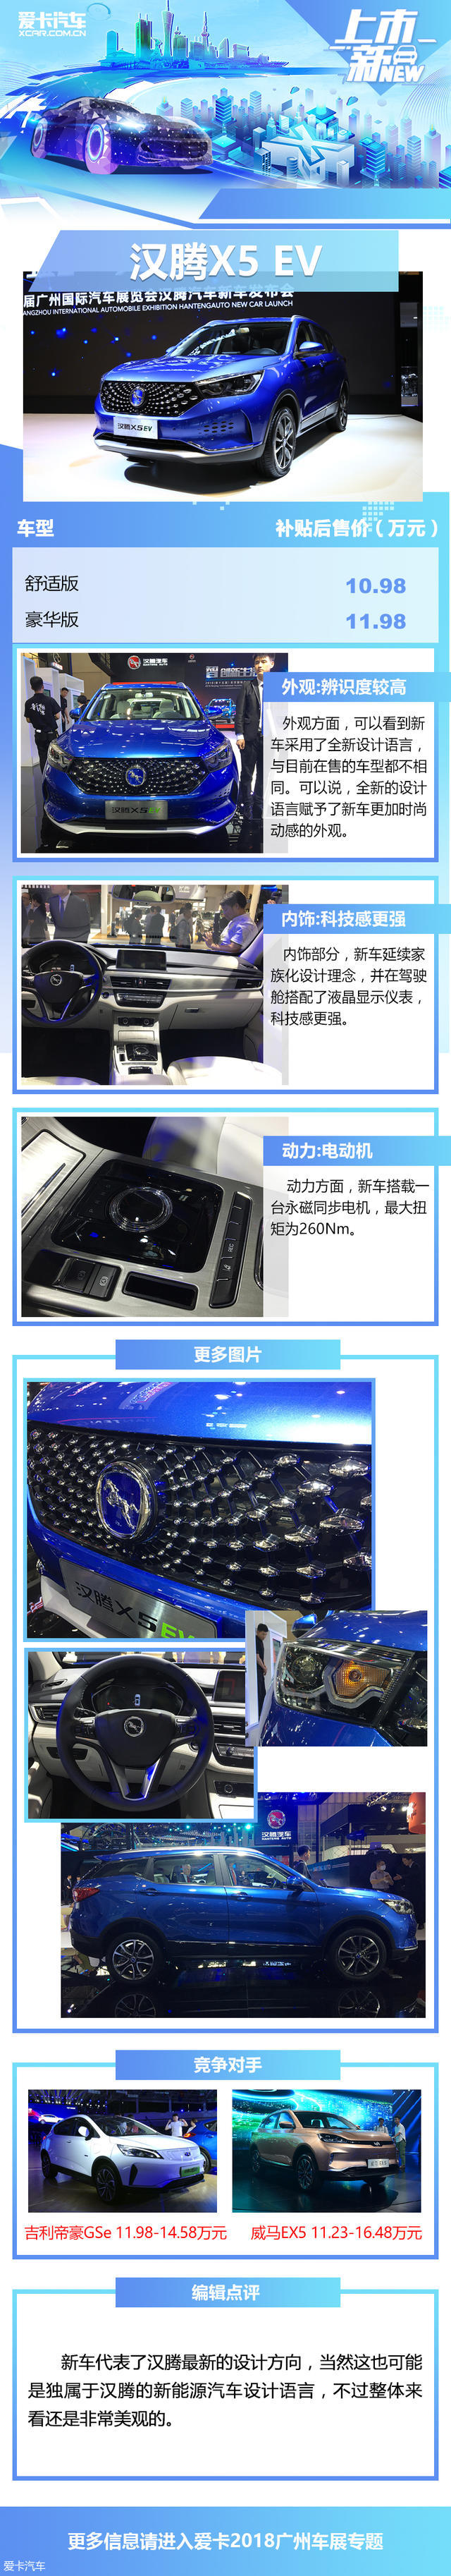 双液晶屏/电子换挡 汉腾X5 EV正式上市